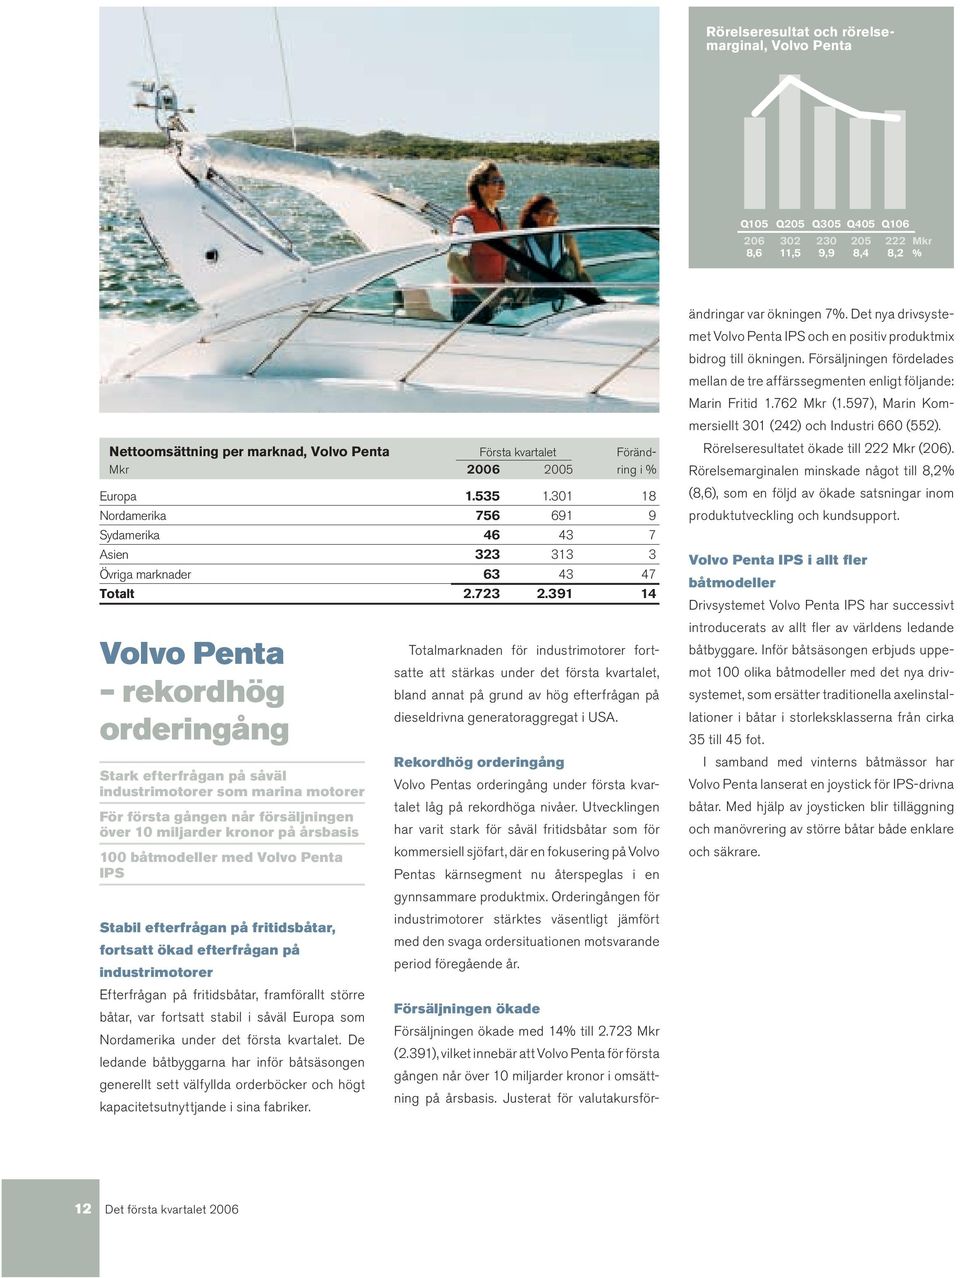 391 14 Volvo Penta rekordhög orderingång Stark efterfrågan på såväl industrimotorer som marina motorer För första gången når försäljningen över 10 miljarder kronor på årsbasis 100 båtmodeller med